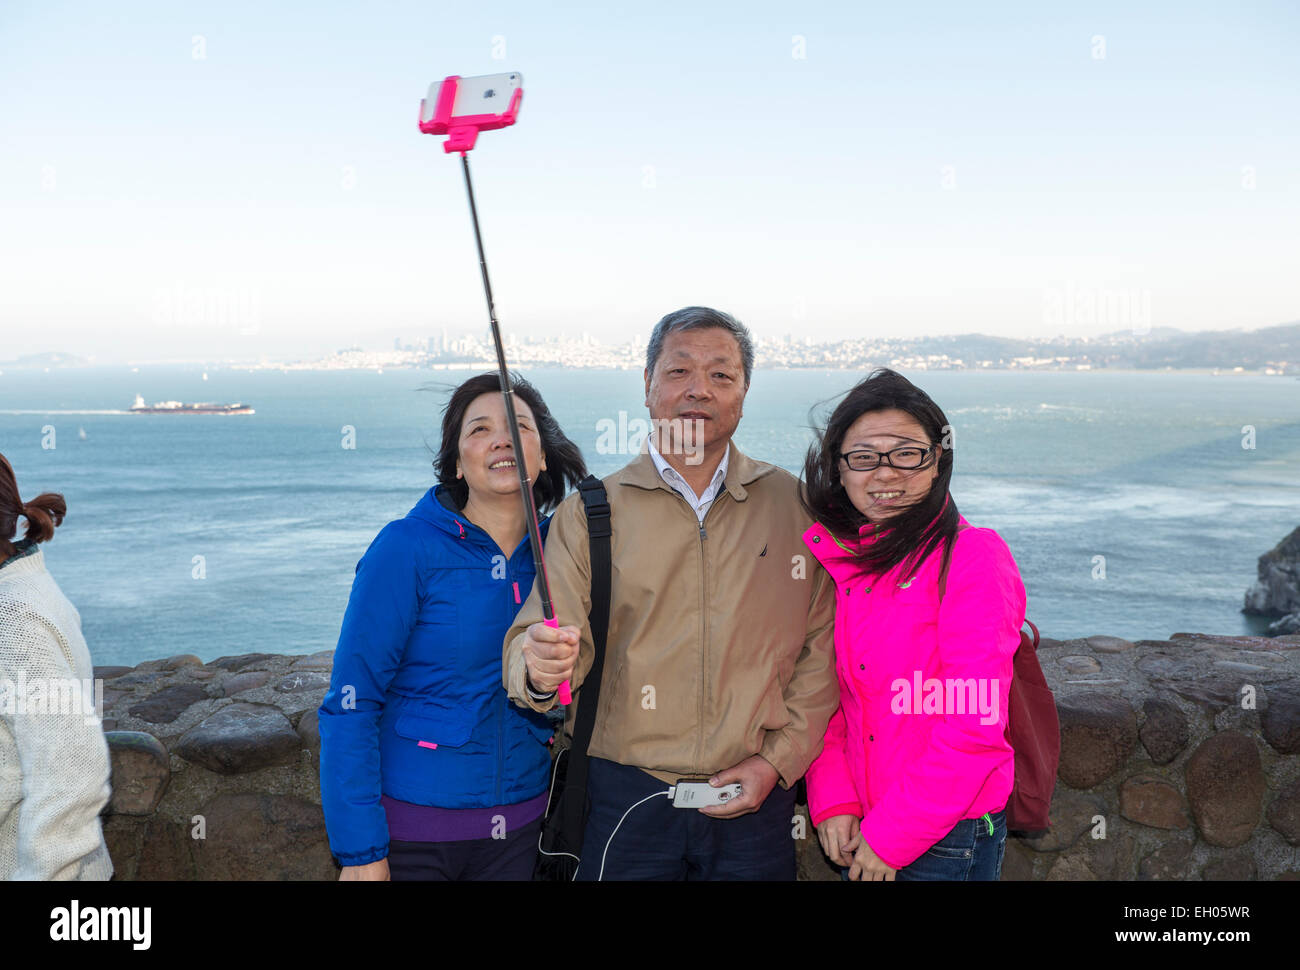 Les touristes, famille, en selfies selfies, photo, stick selfies, Vista Point, côté nord du Golden Gate Bridge, de la ville de Sausalito, Sausalito, Californie Banque D'Images